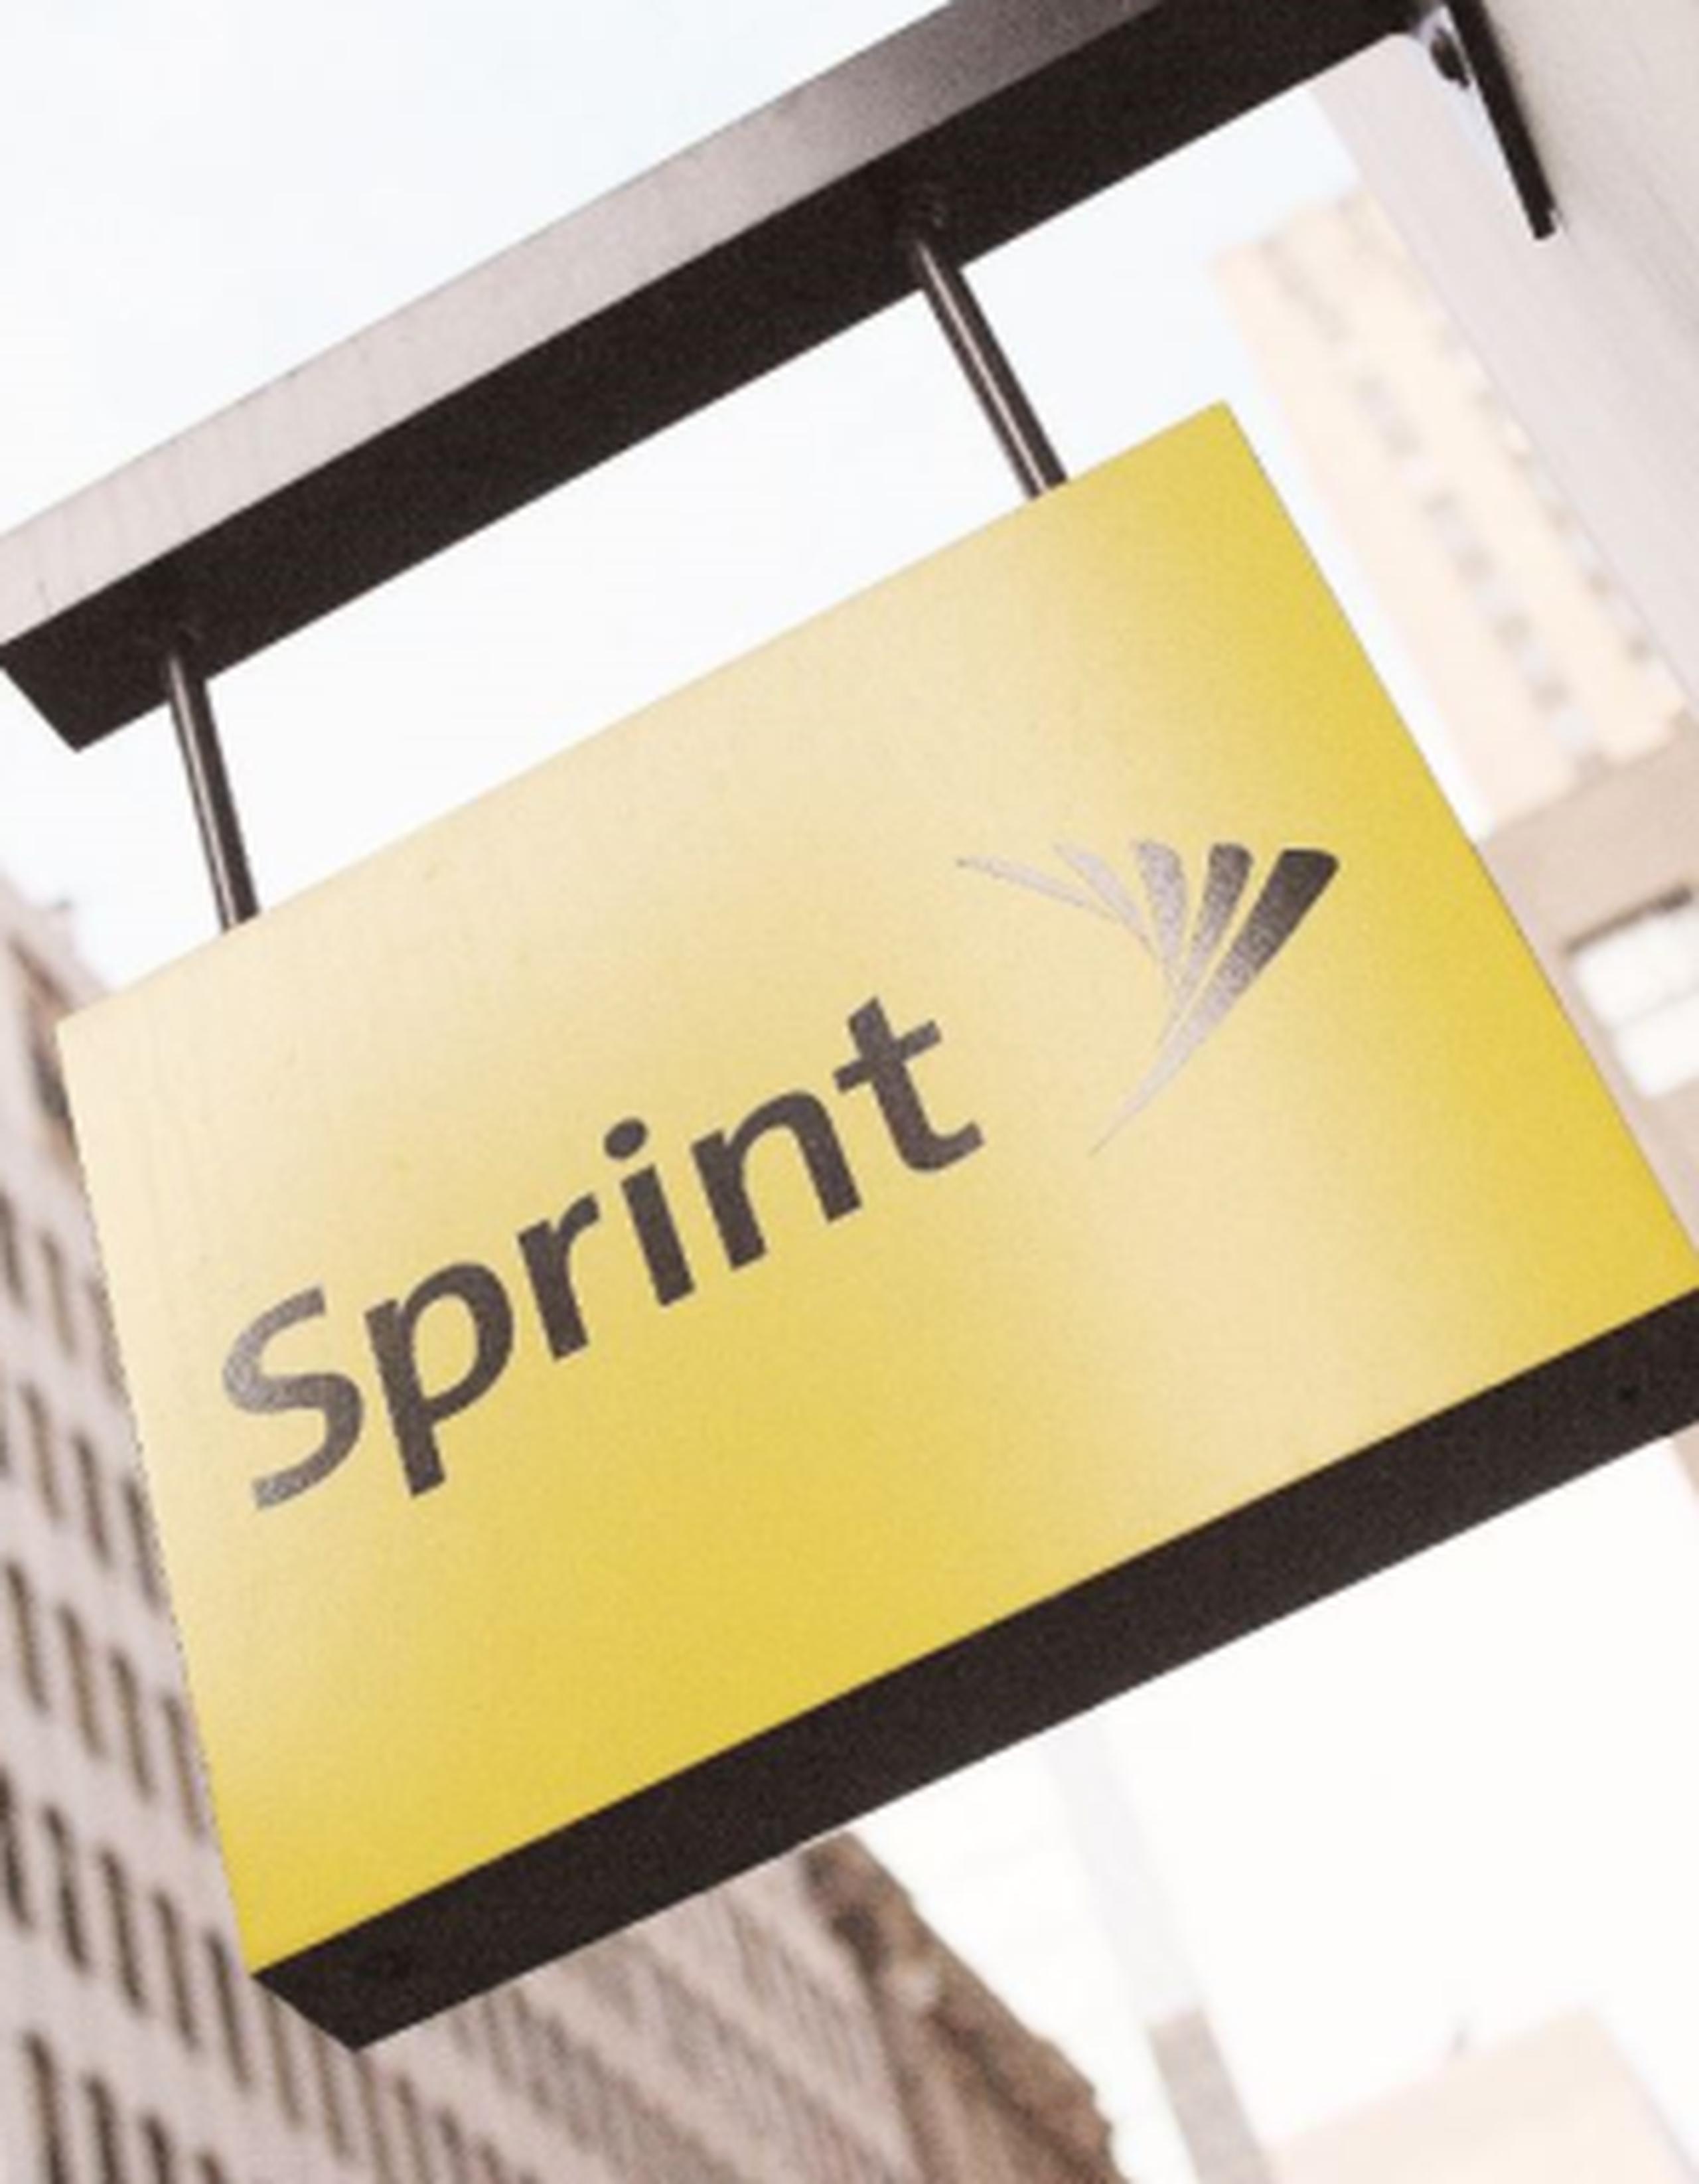 El martes  pasado casi la totalidad de los clientes de Sprint se quedaron sin servicio celular durante varias horas debido a un incidente que provocó una ruptura en una de sus líneas de fibra óptica. (Archivo)